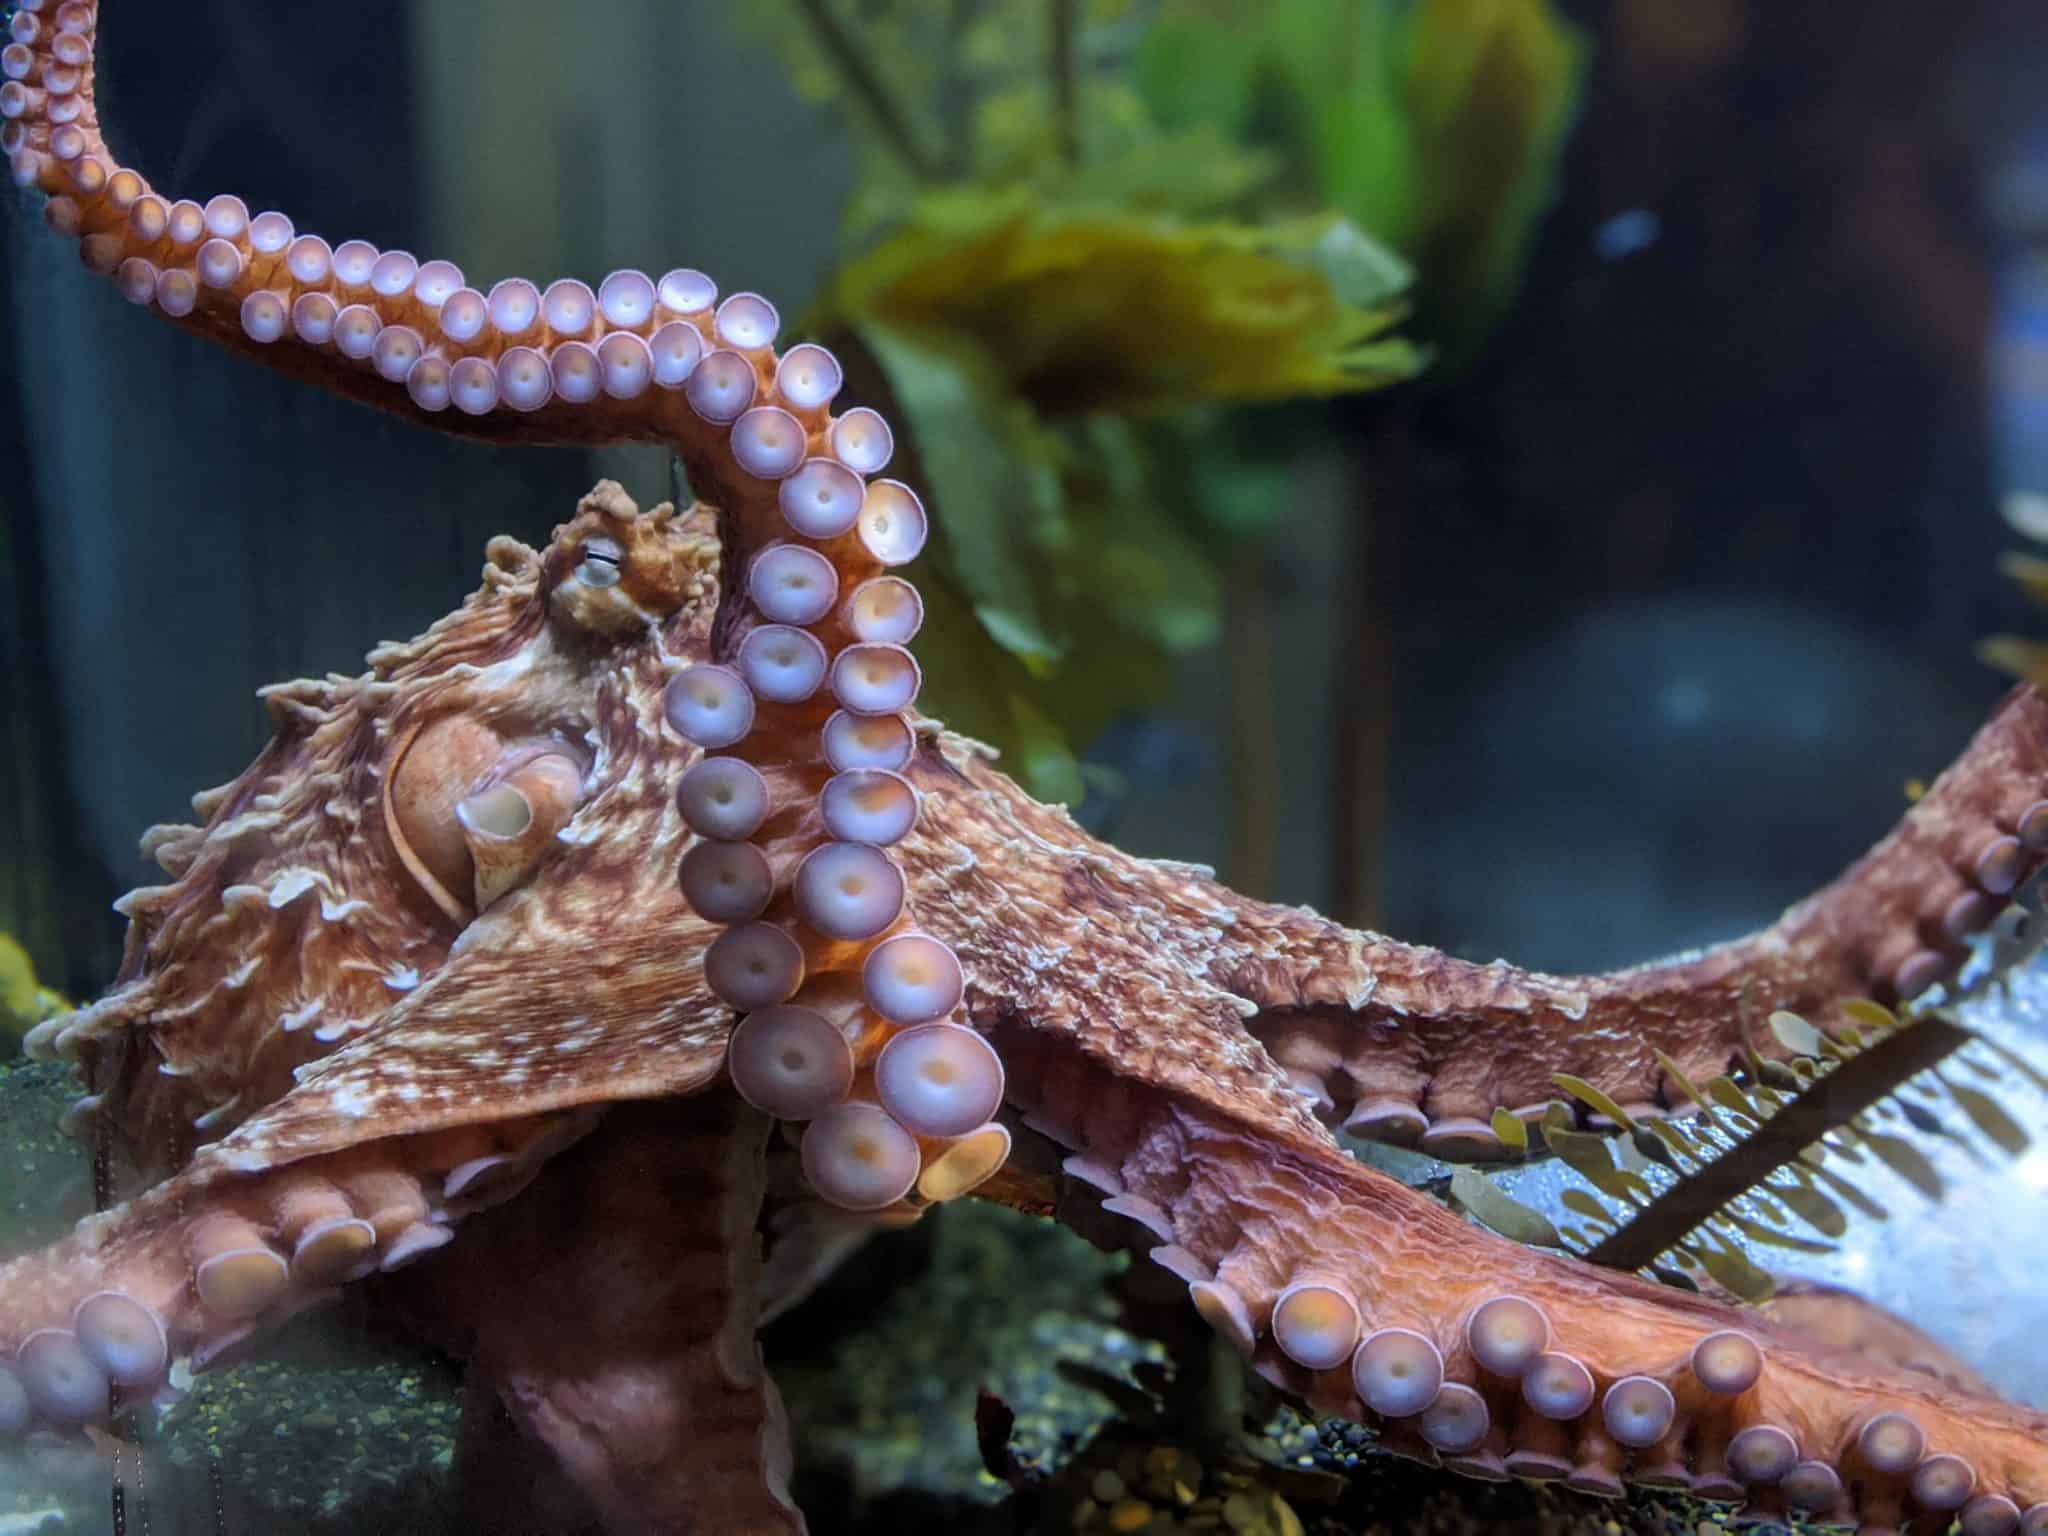 biggest octopus